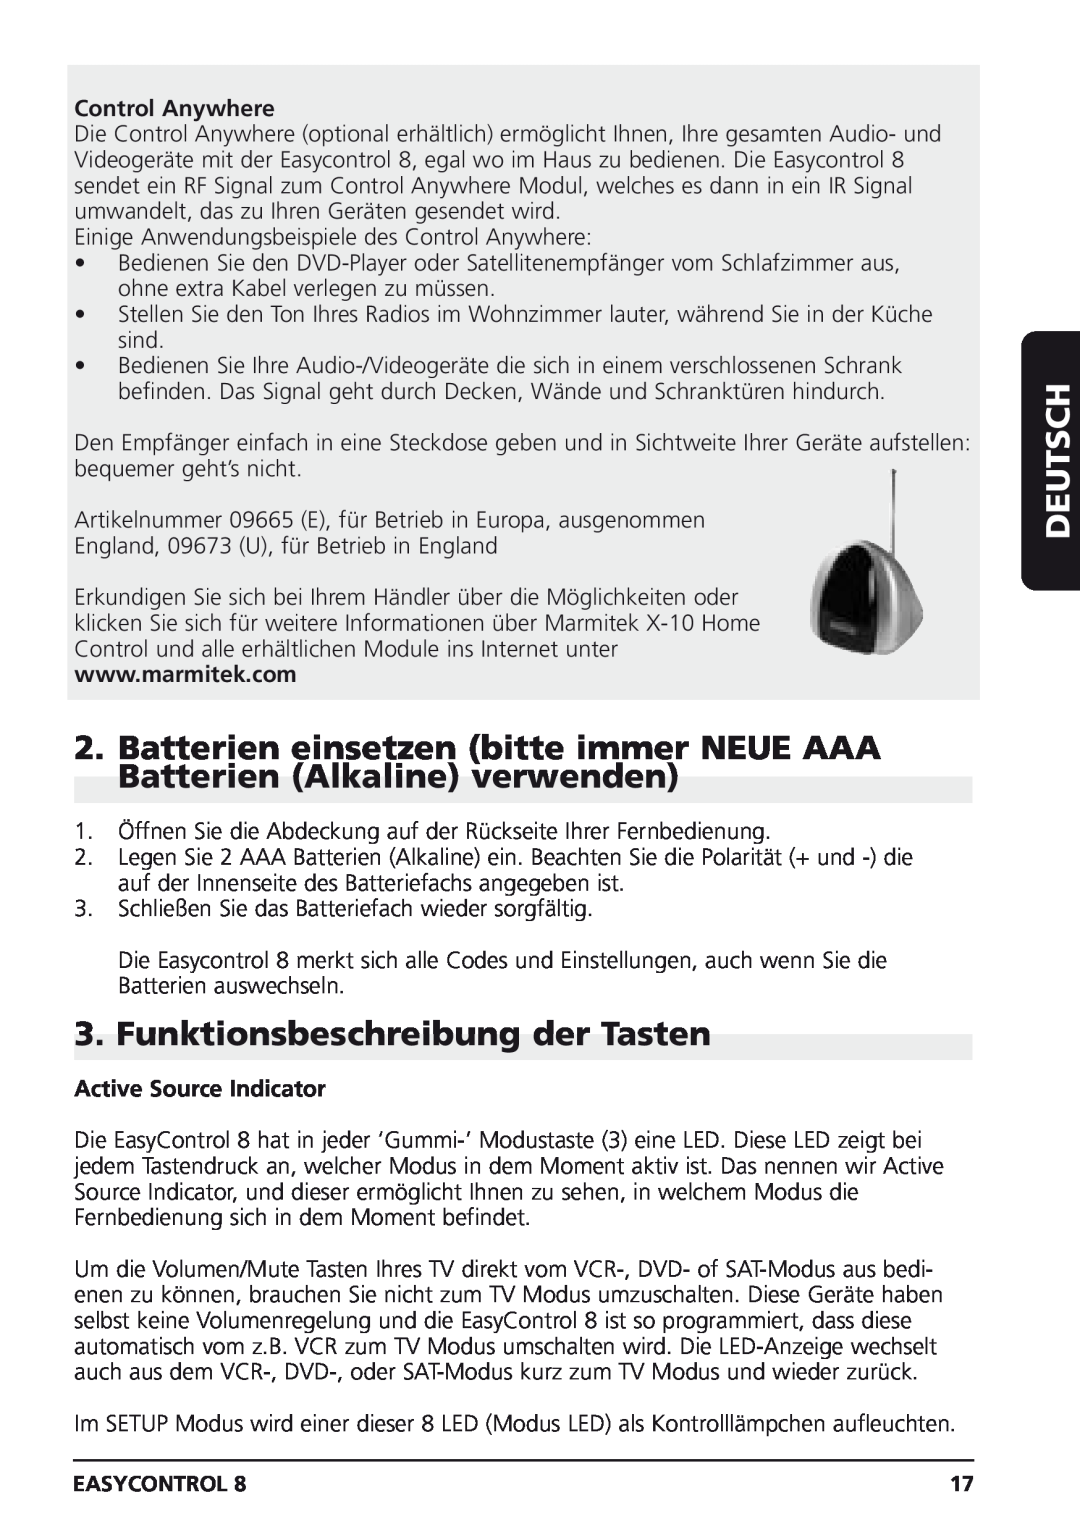 Marmitek Easycontrol 8 owner manual Funktionsbeschreibung der Tasten, Deutsch, Control Anywhere, Active Source Indicator 